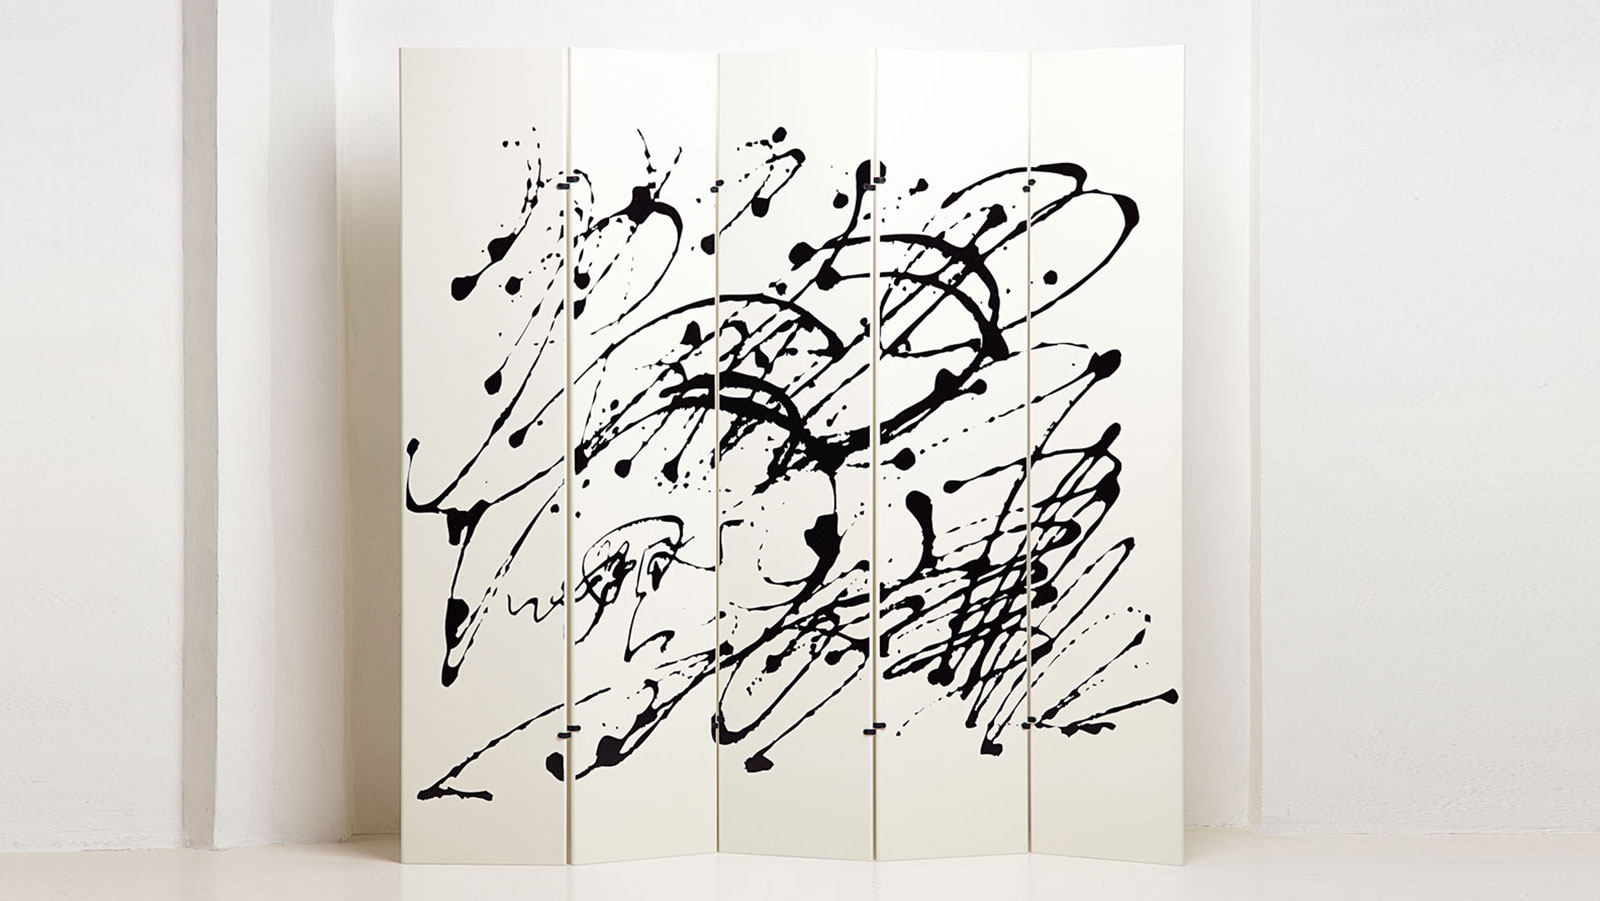 Jackson Pollock screen by Gavina and Takahama | Paradisoterrestre